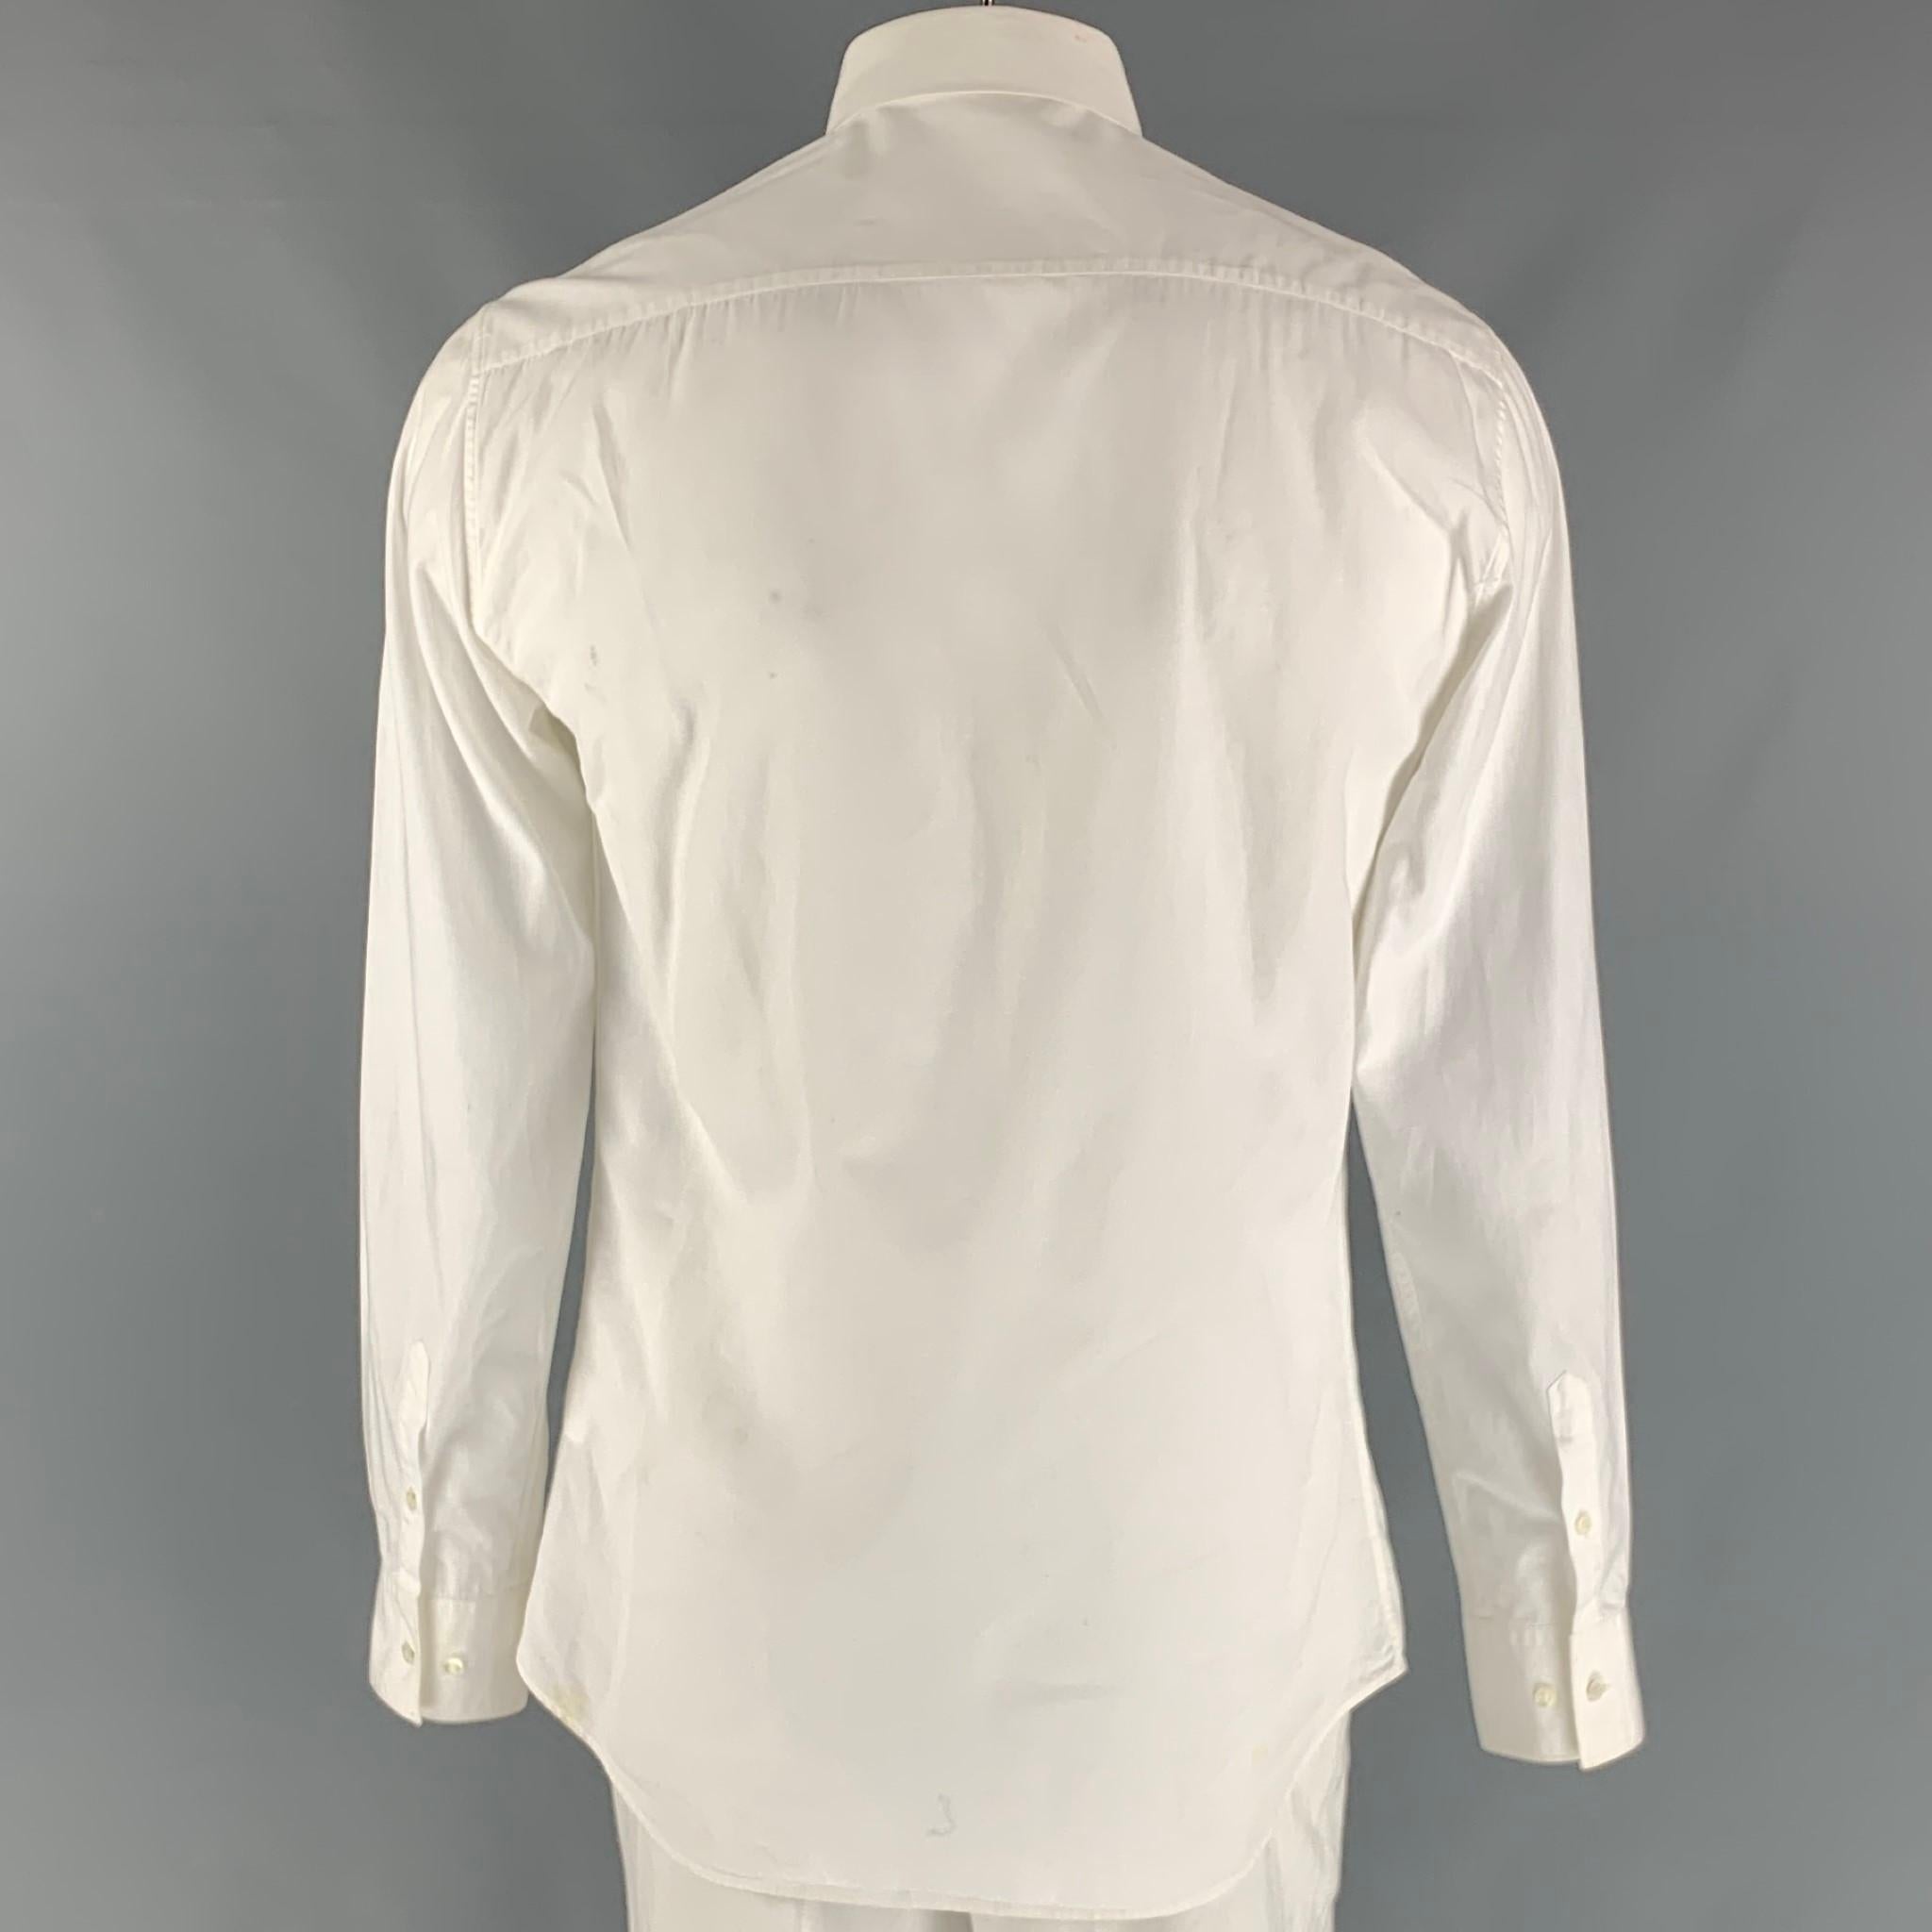 neil barrett white shirt